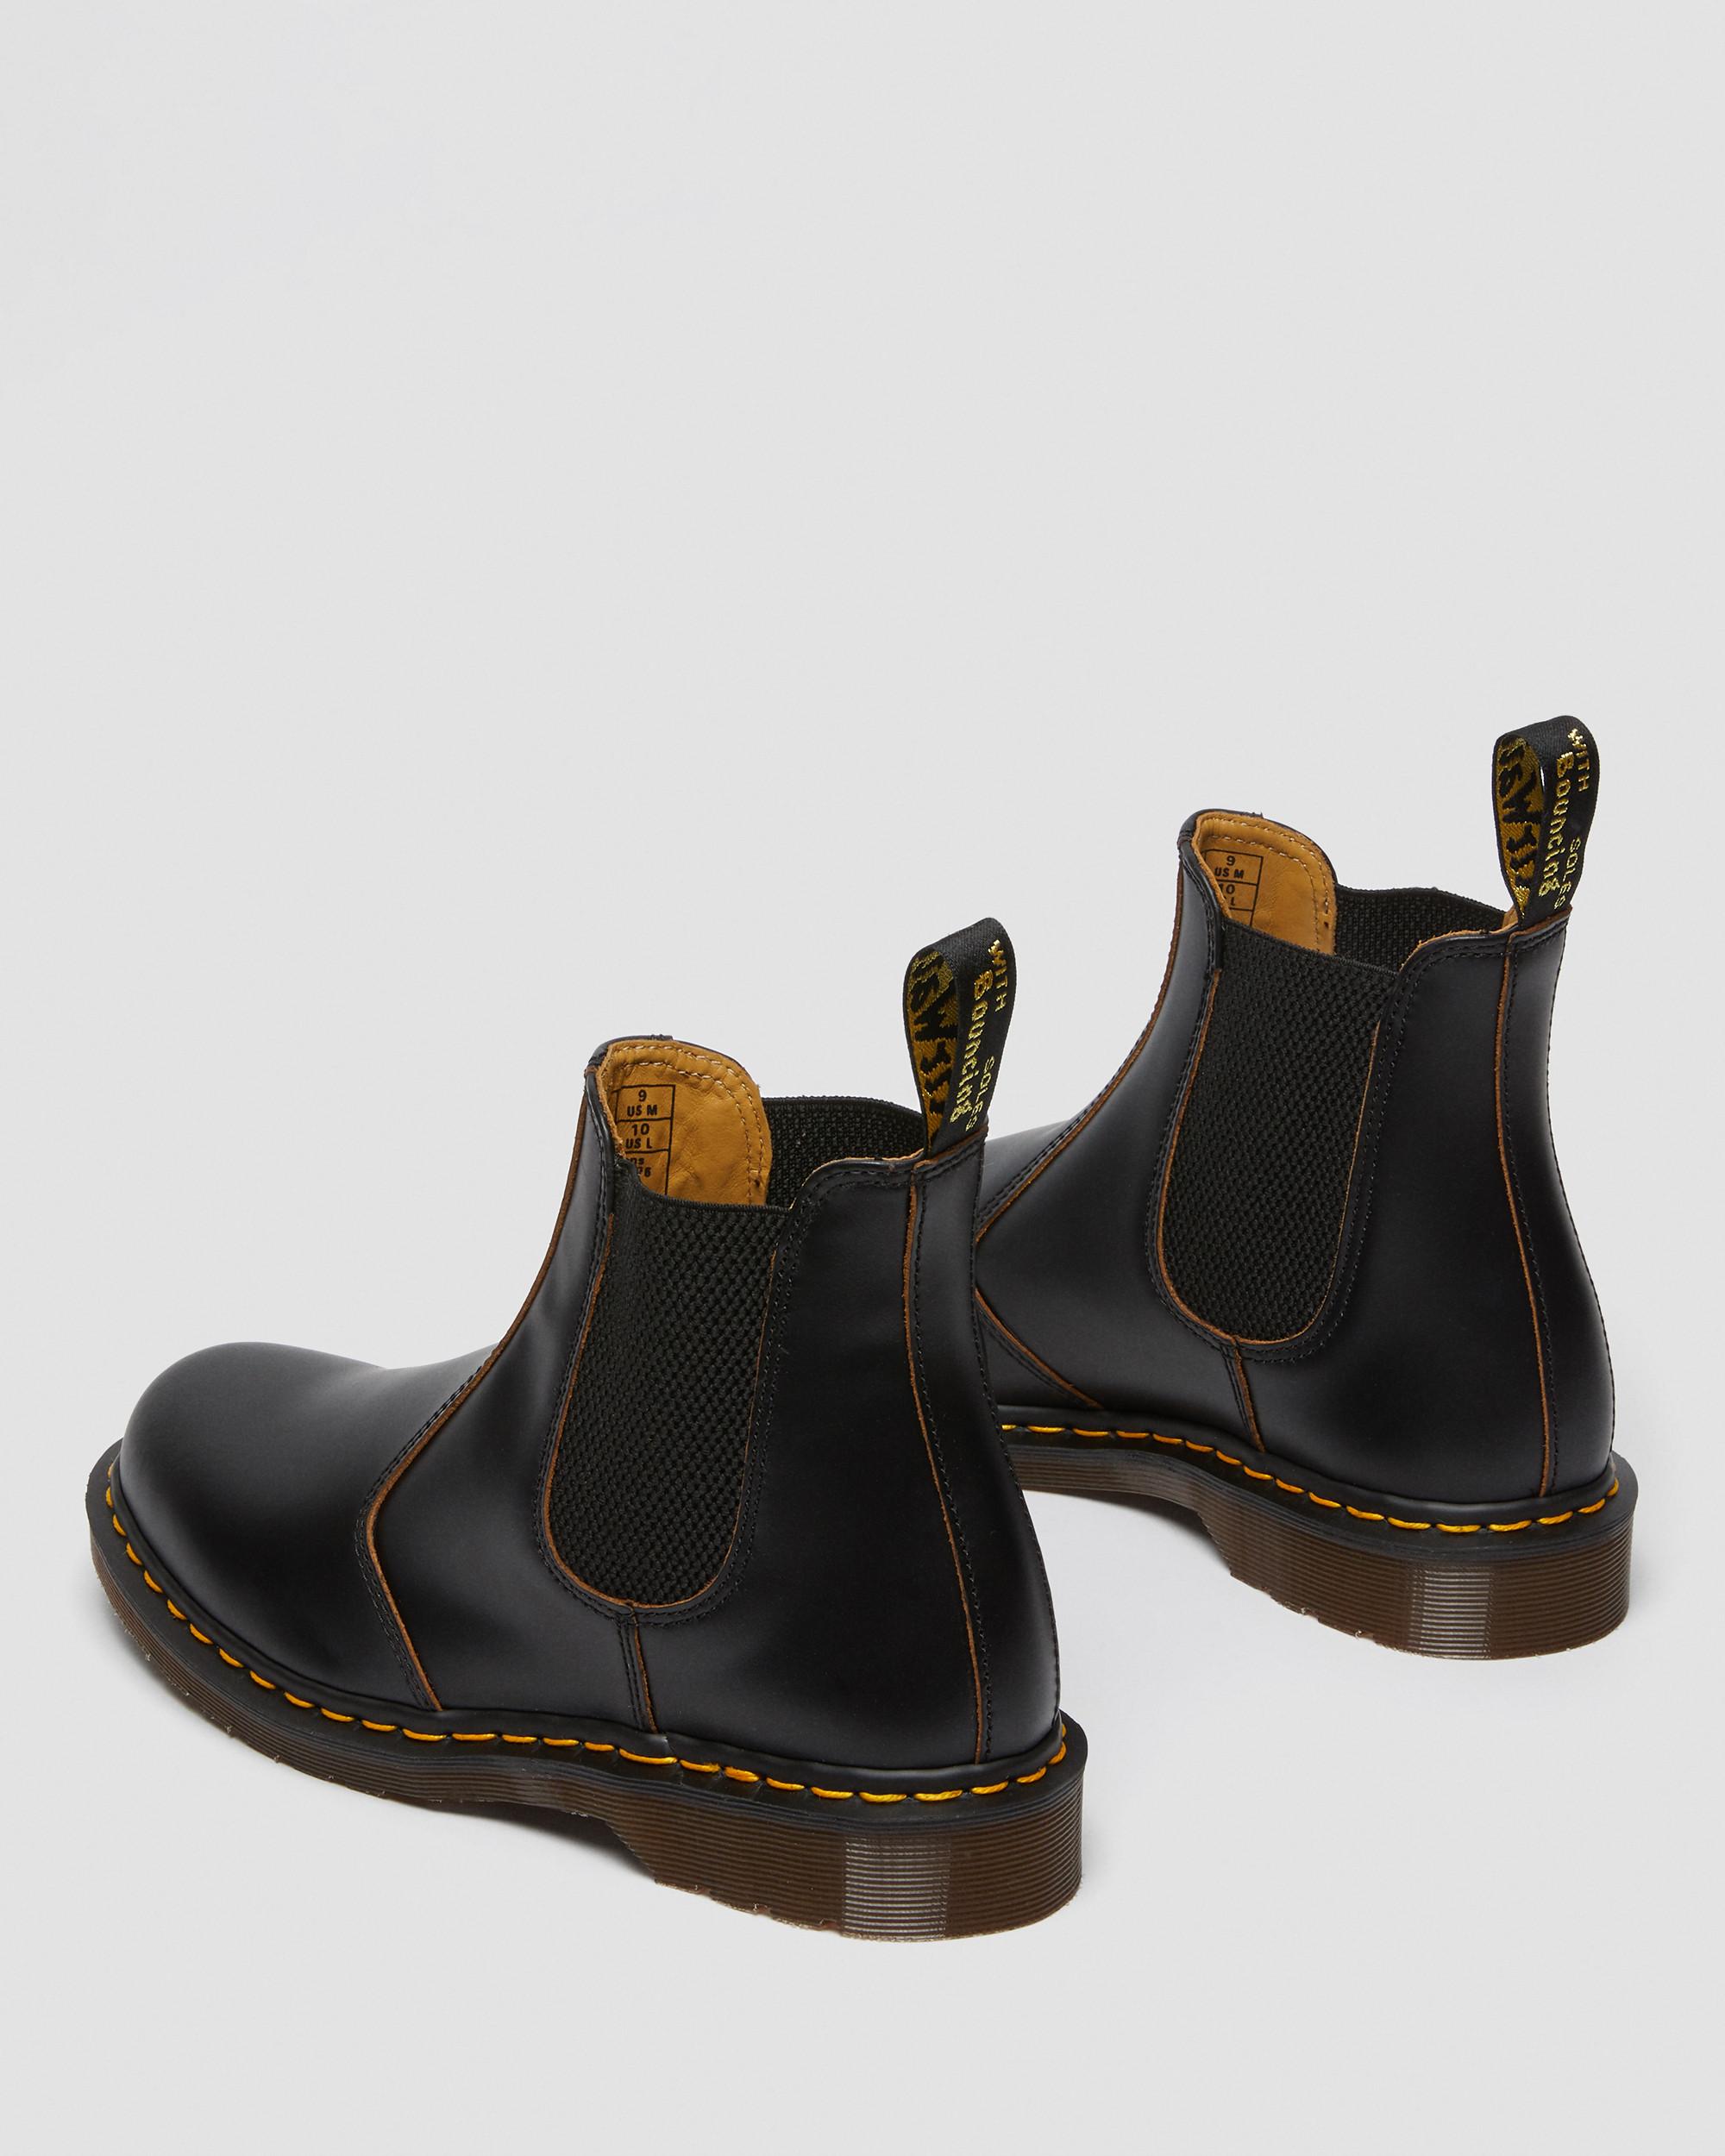 ensidigt Uegnet miste dig selv 2976 Vintage Made In England Chelsea Boots | Dr. Martens